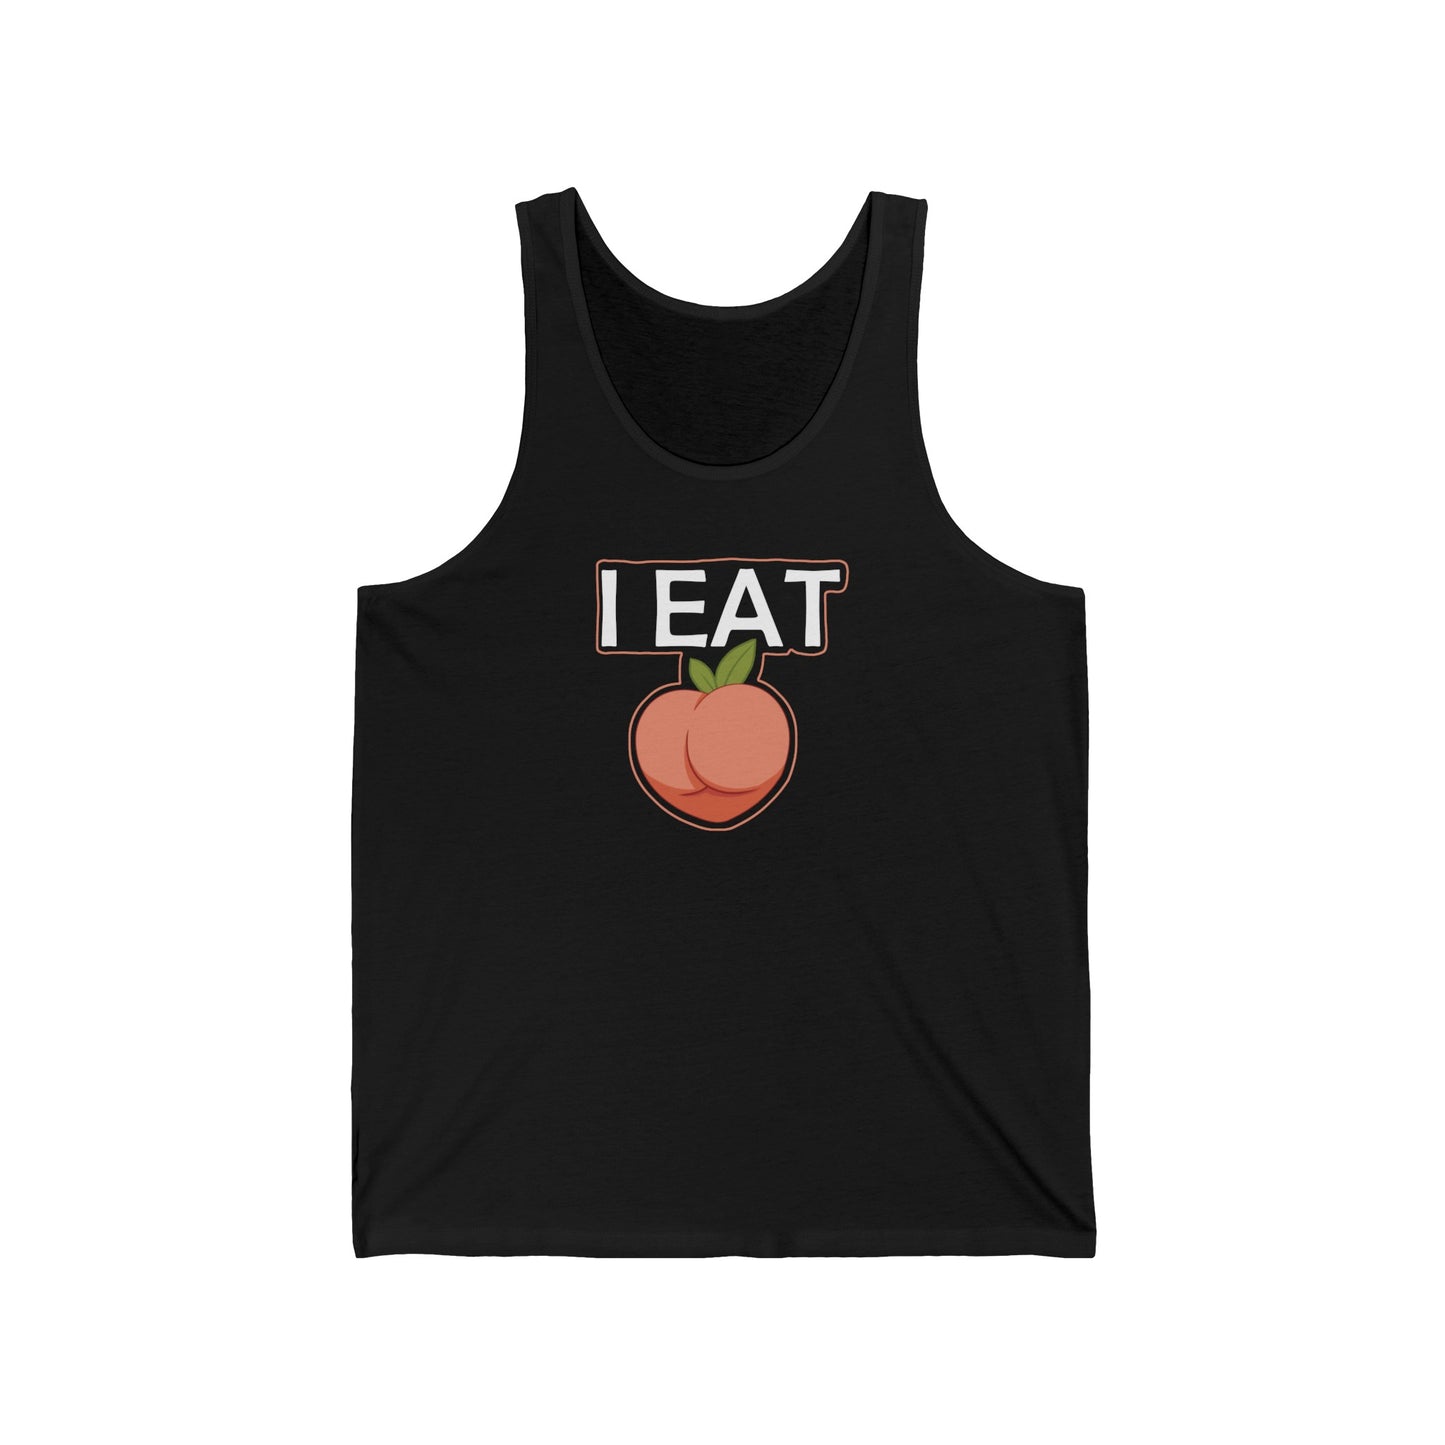 I Eat Peach